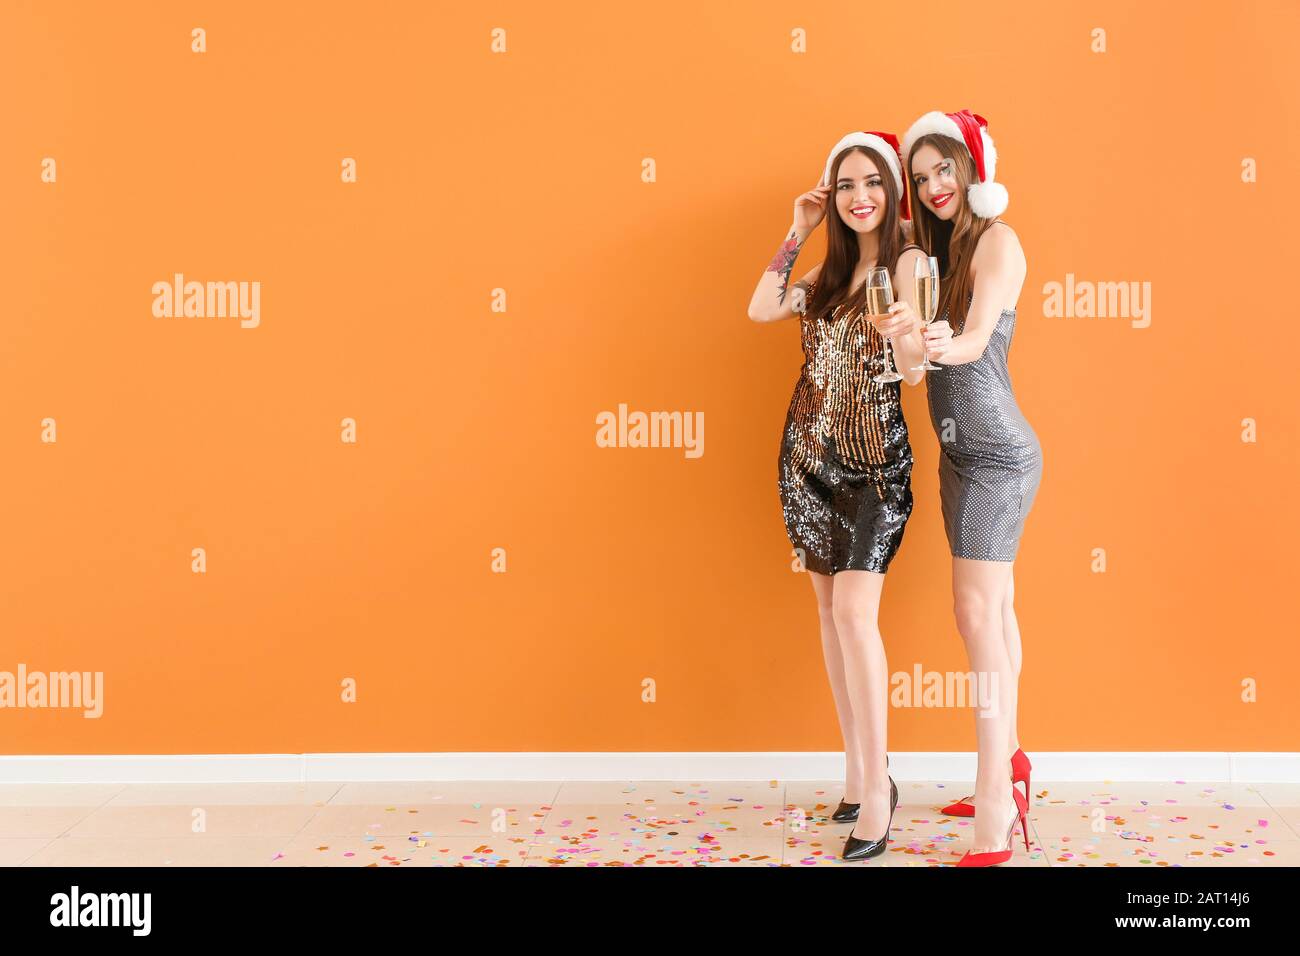 Schöne junge Frauen mit Champagner, die Weihnachten auf der Party feiern Stockfoto